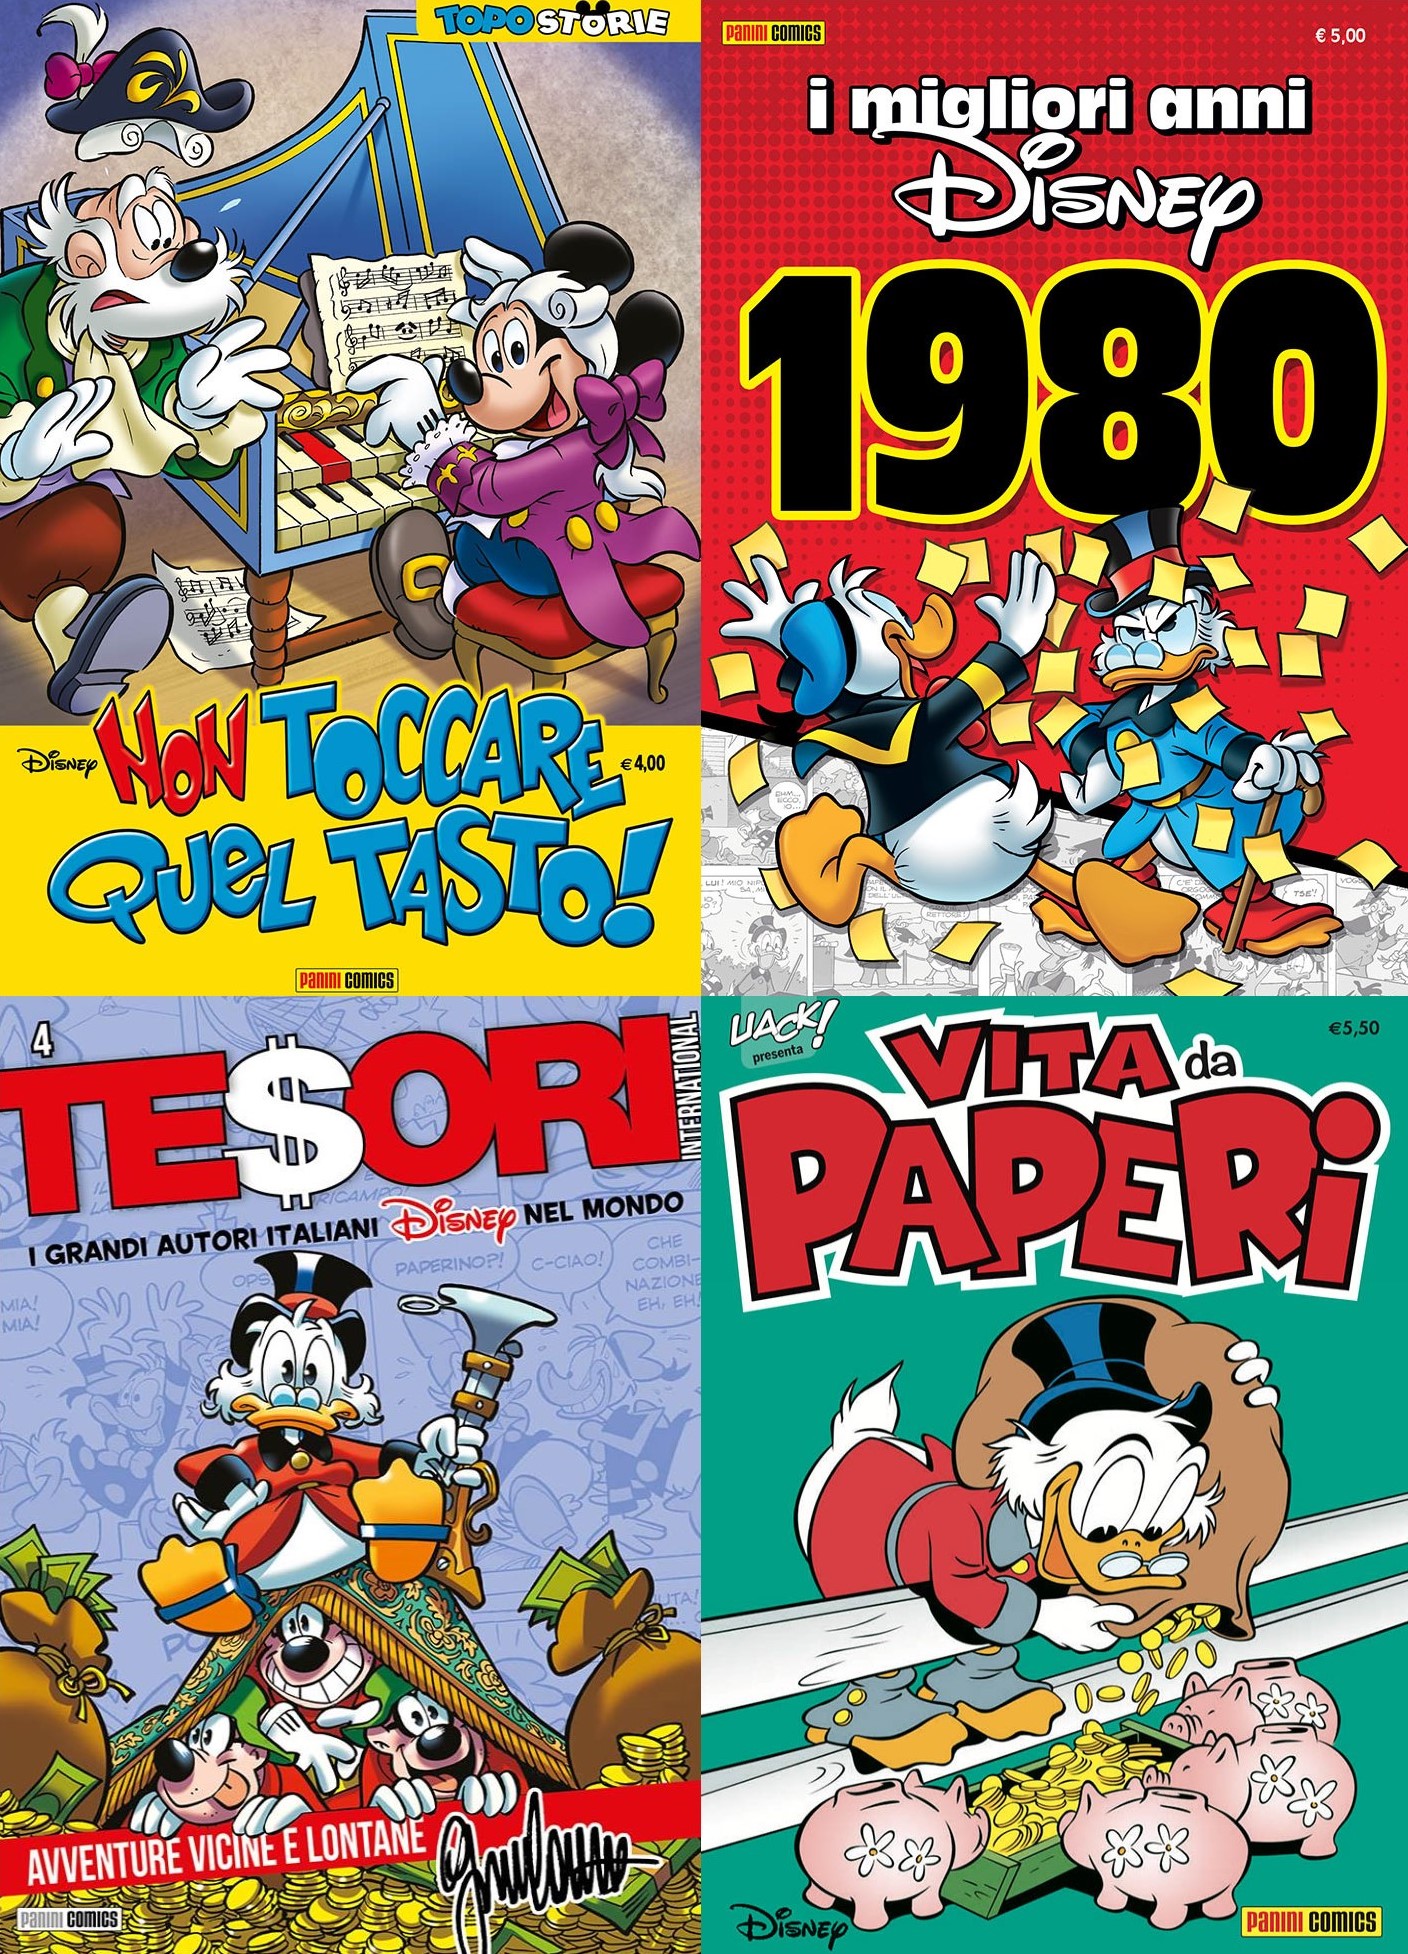 Topostorie, I migliori anni Disney, Tesori Disney International, Uack presenta Vita da Paperi: una prece